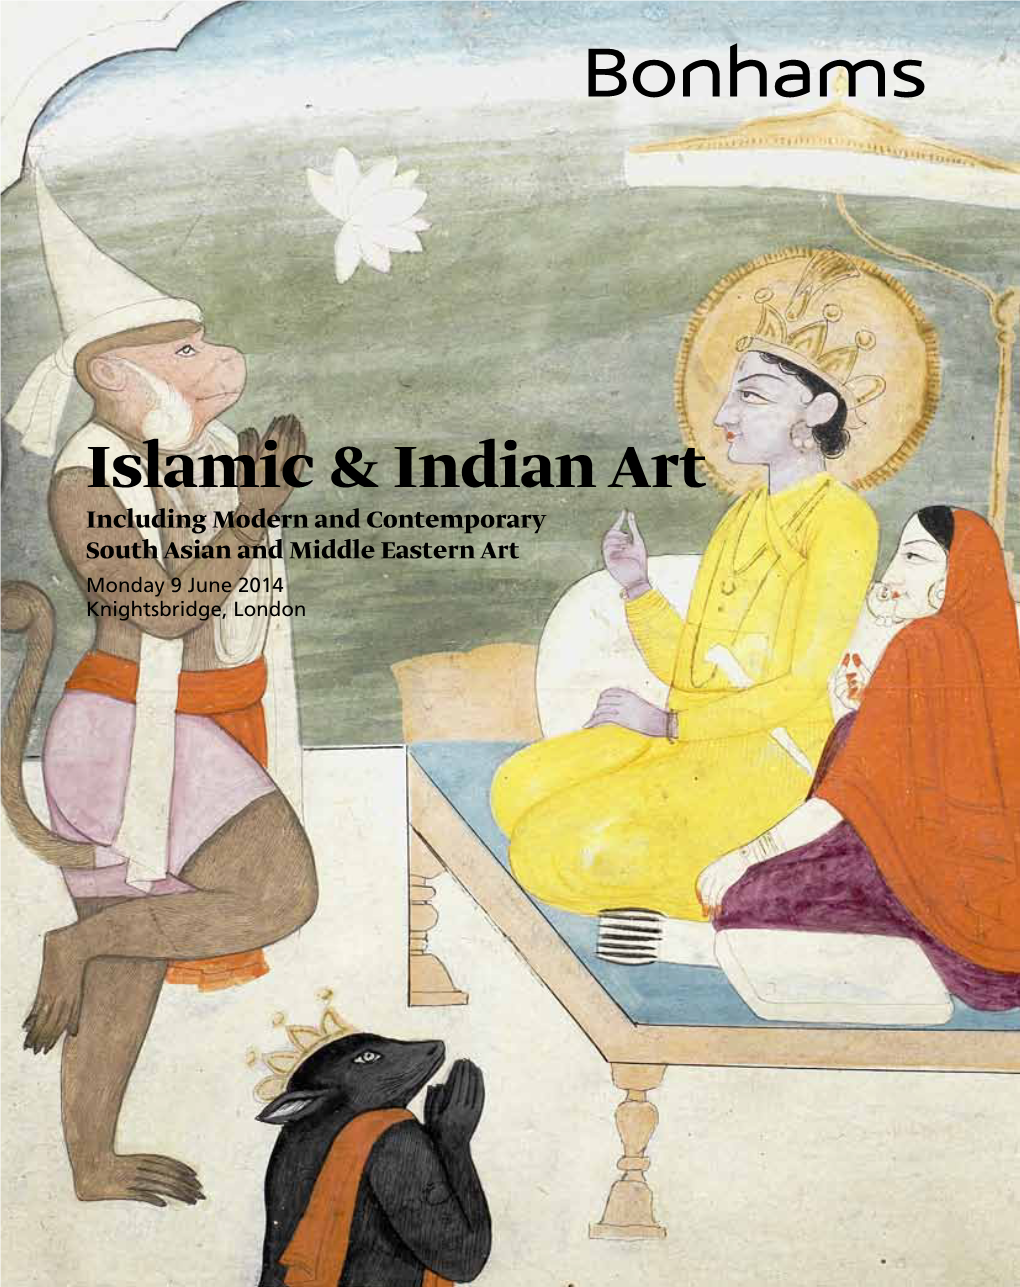 Islamic & Indian